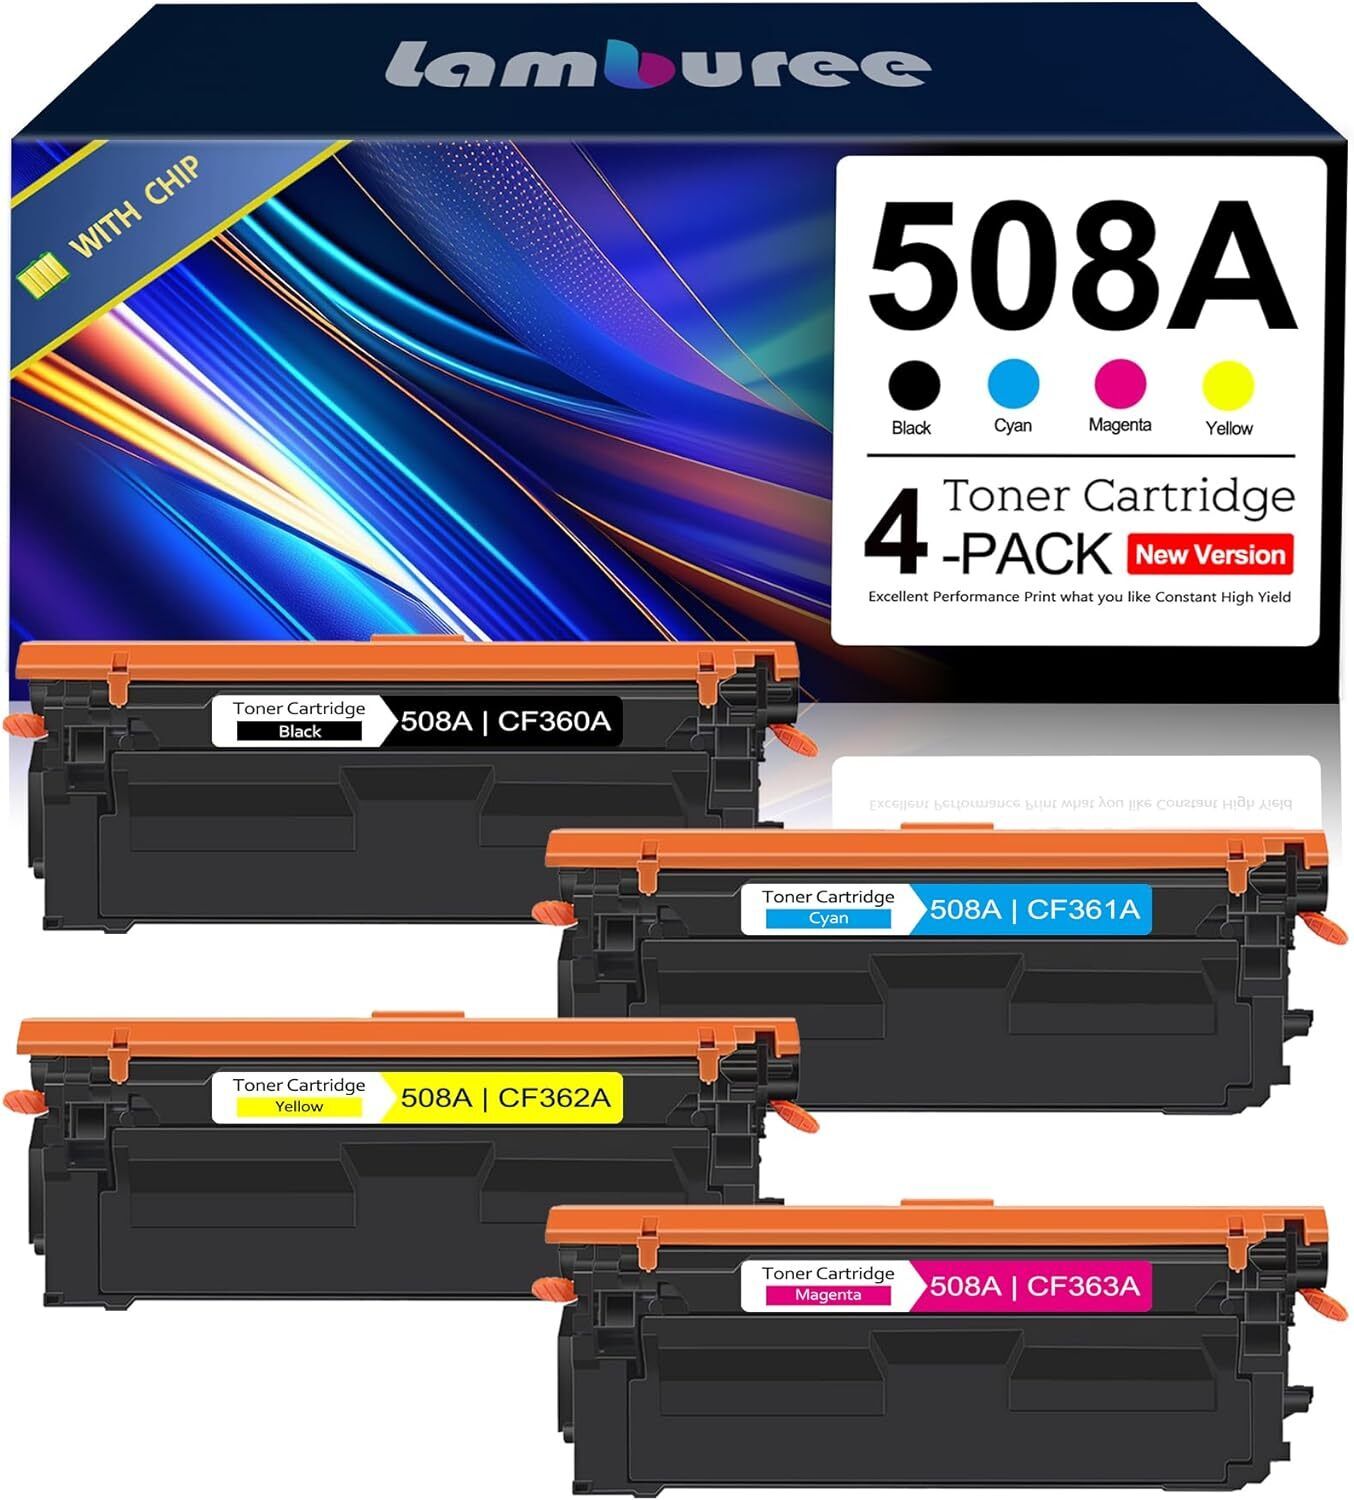 508A Toner Cartridges (1BK/1C/1Y/1M) Replacement for HP Enterprise M552 M553